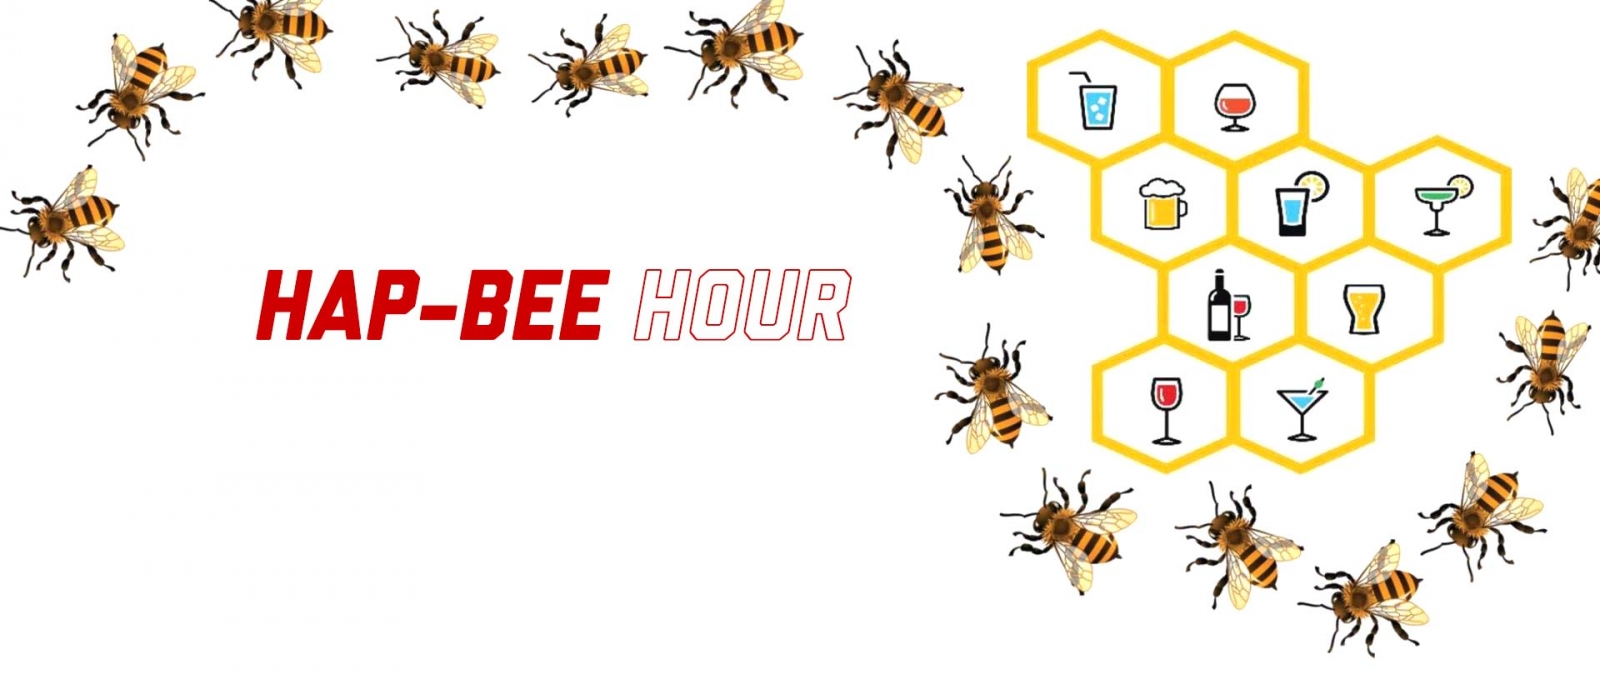 Hap-bee hour logo